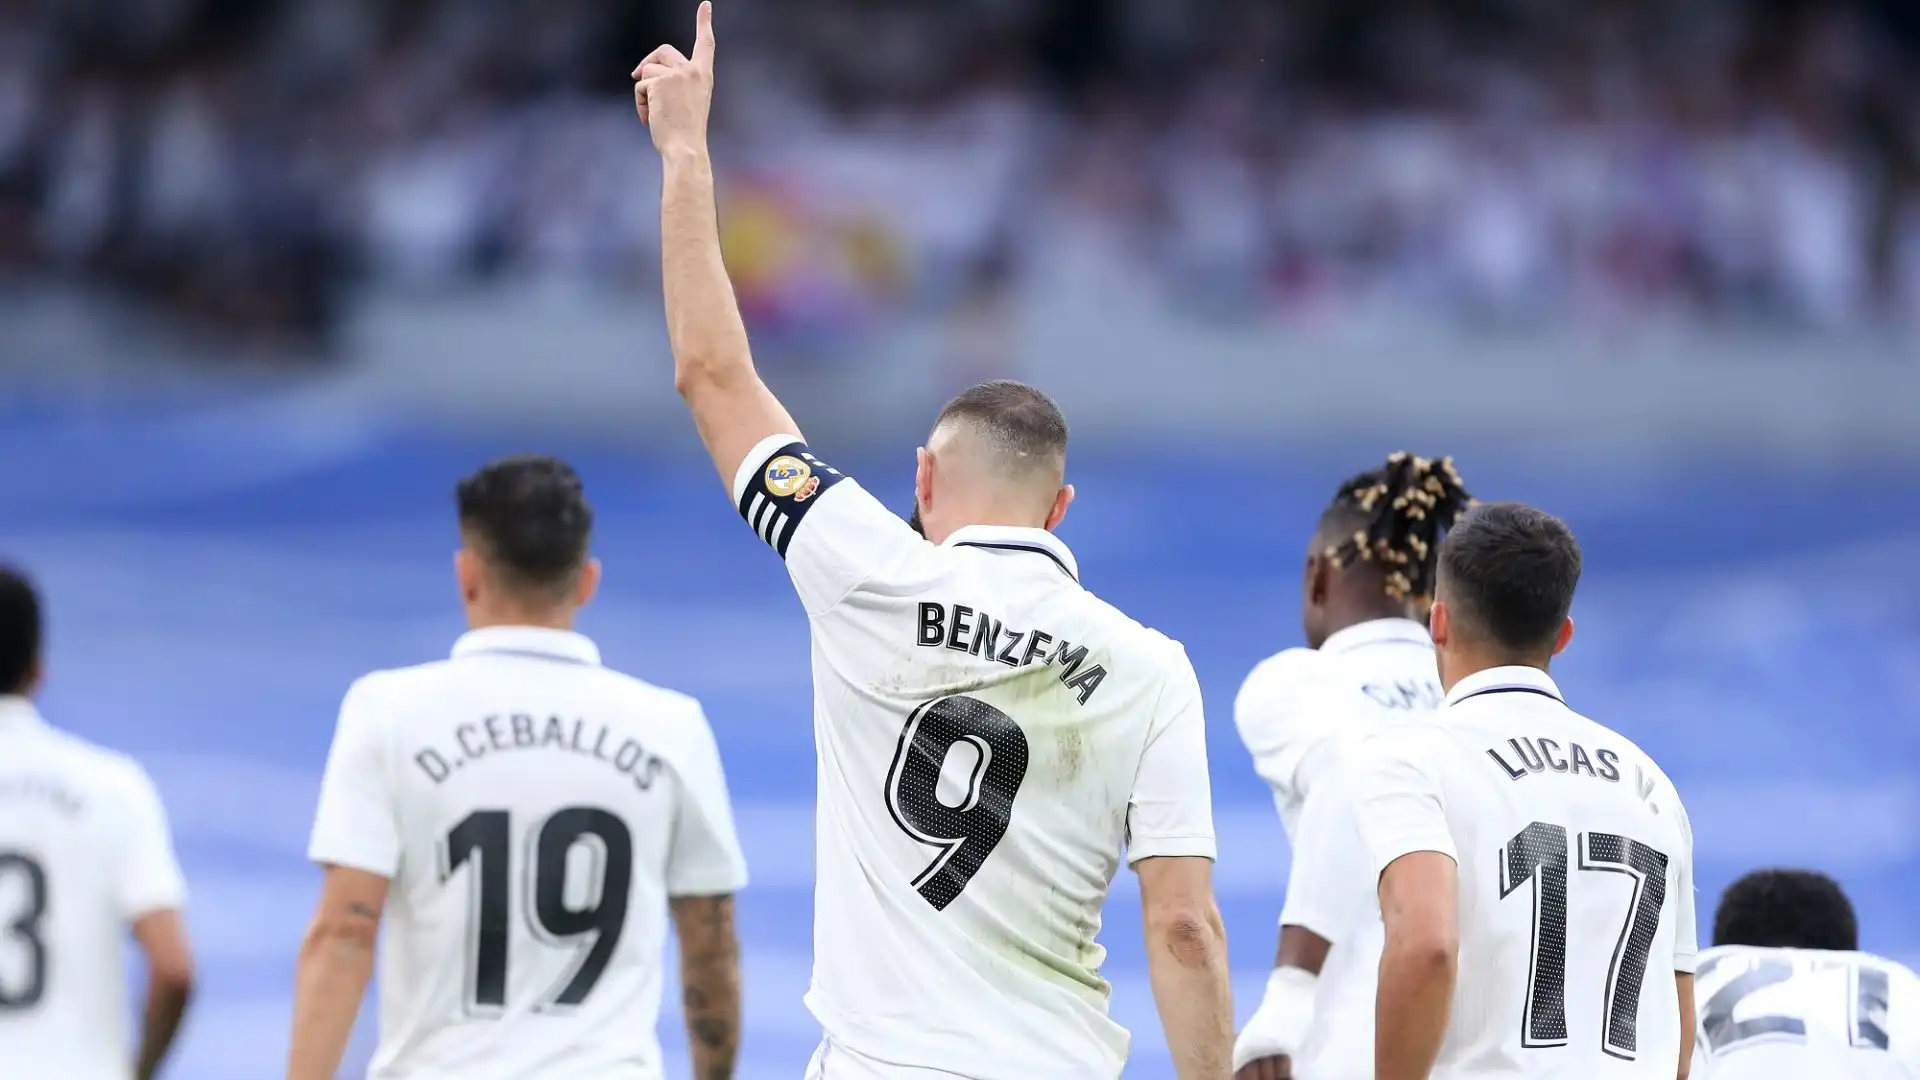 Benzema è sempre più nella storia del Real Madrid